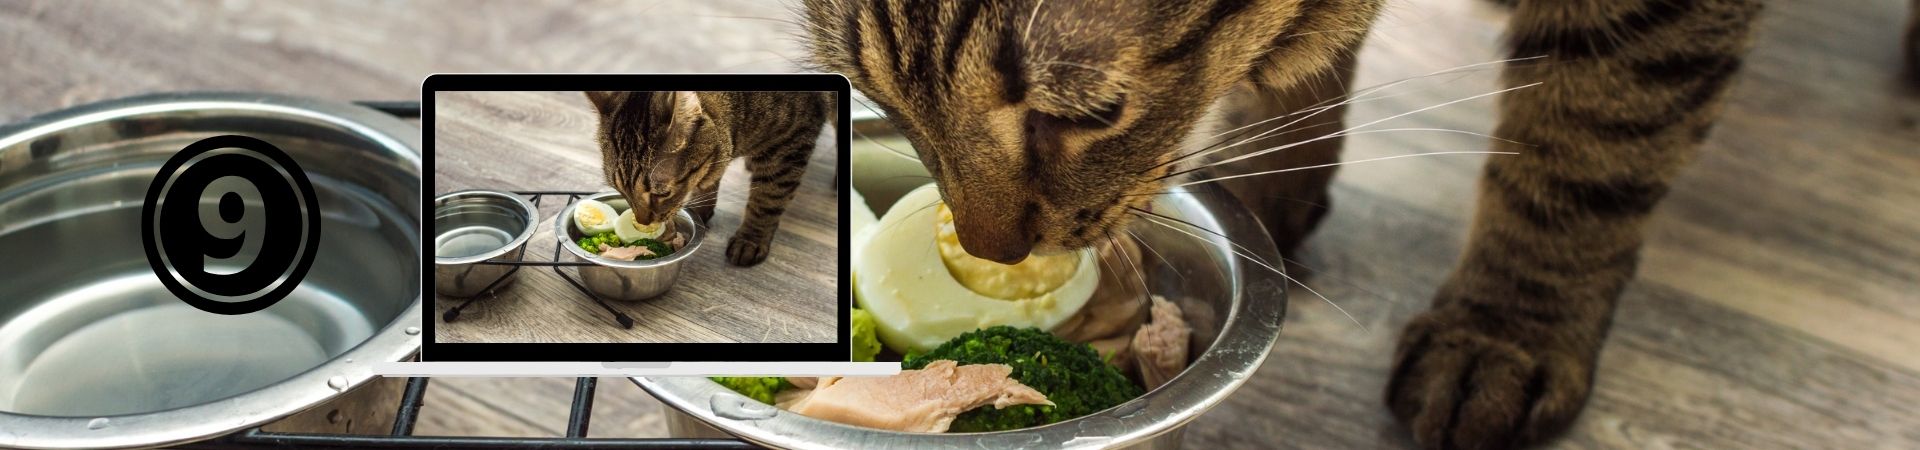 Nutrición felina para una vida saludable – 9. Diferencias entre «carne de..», «proteina de..» y subproductos